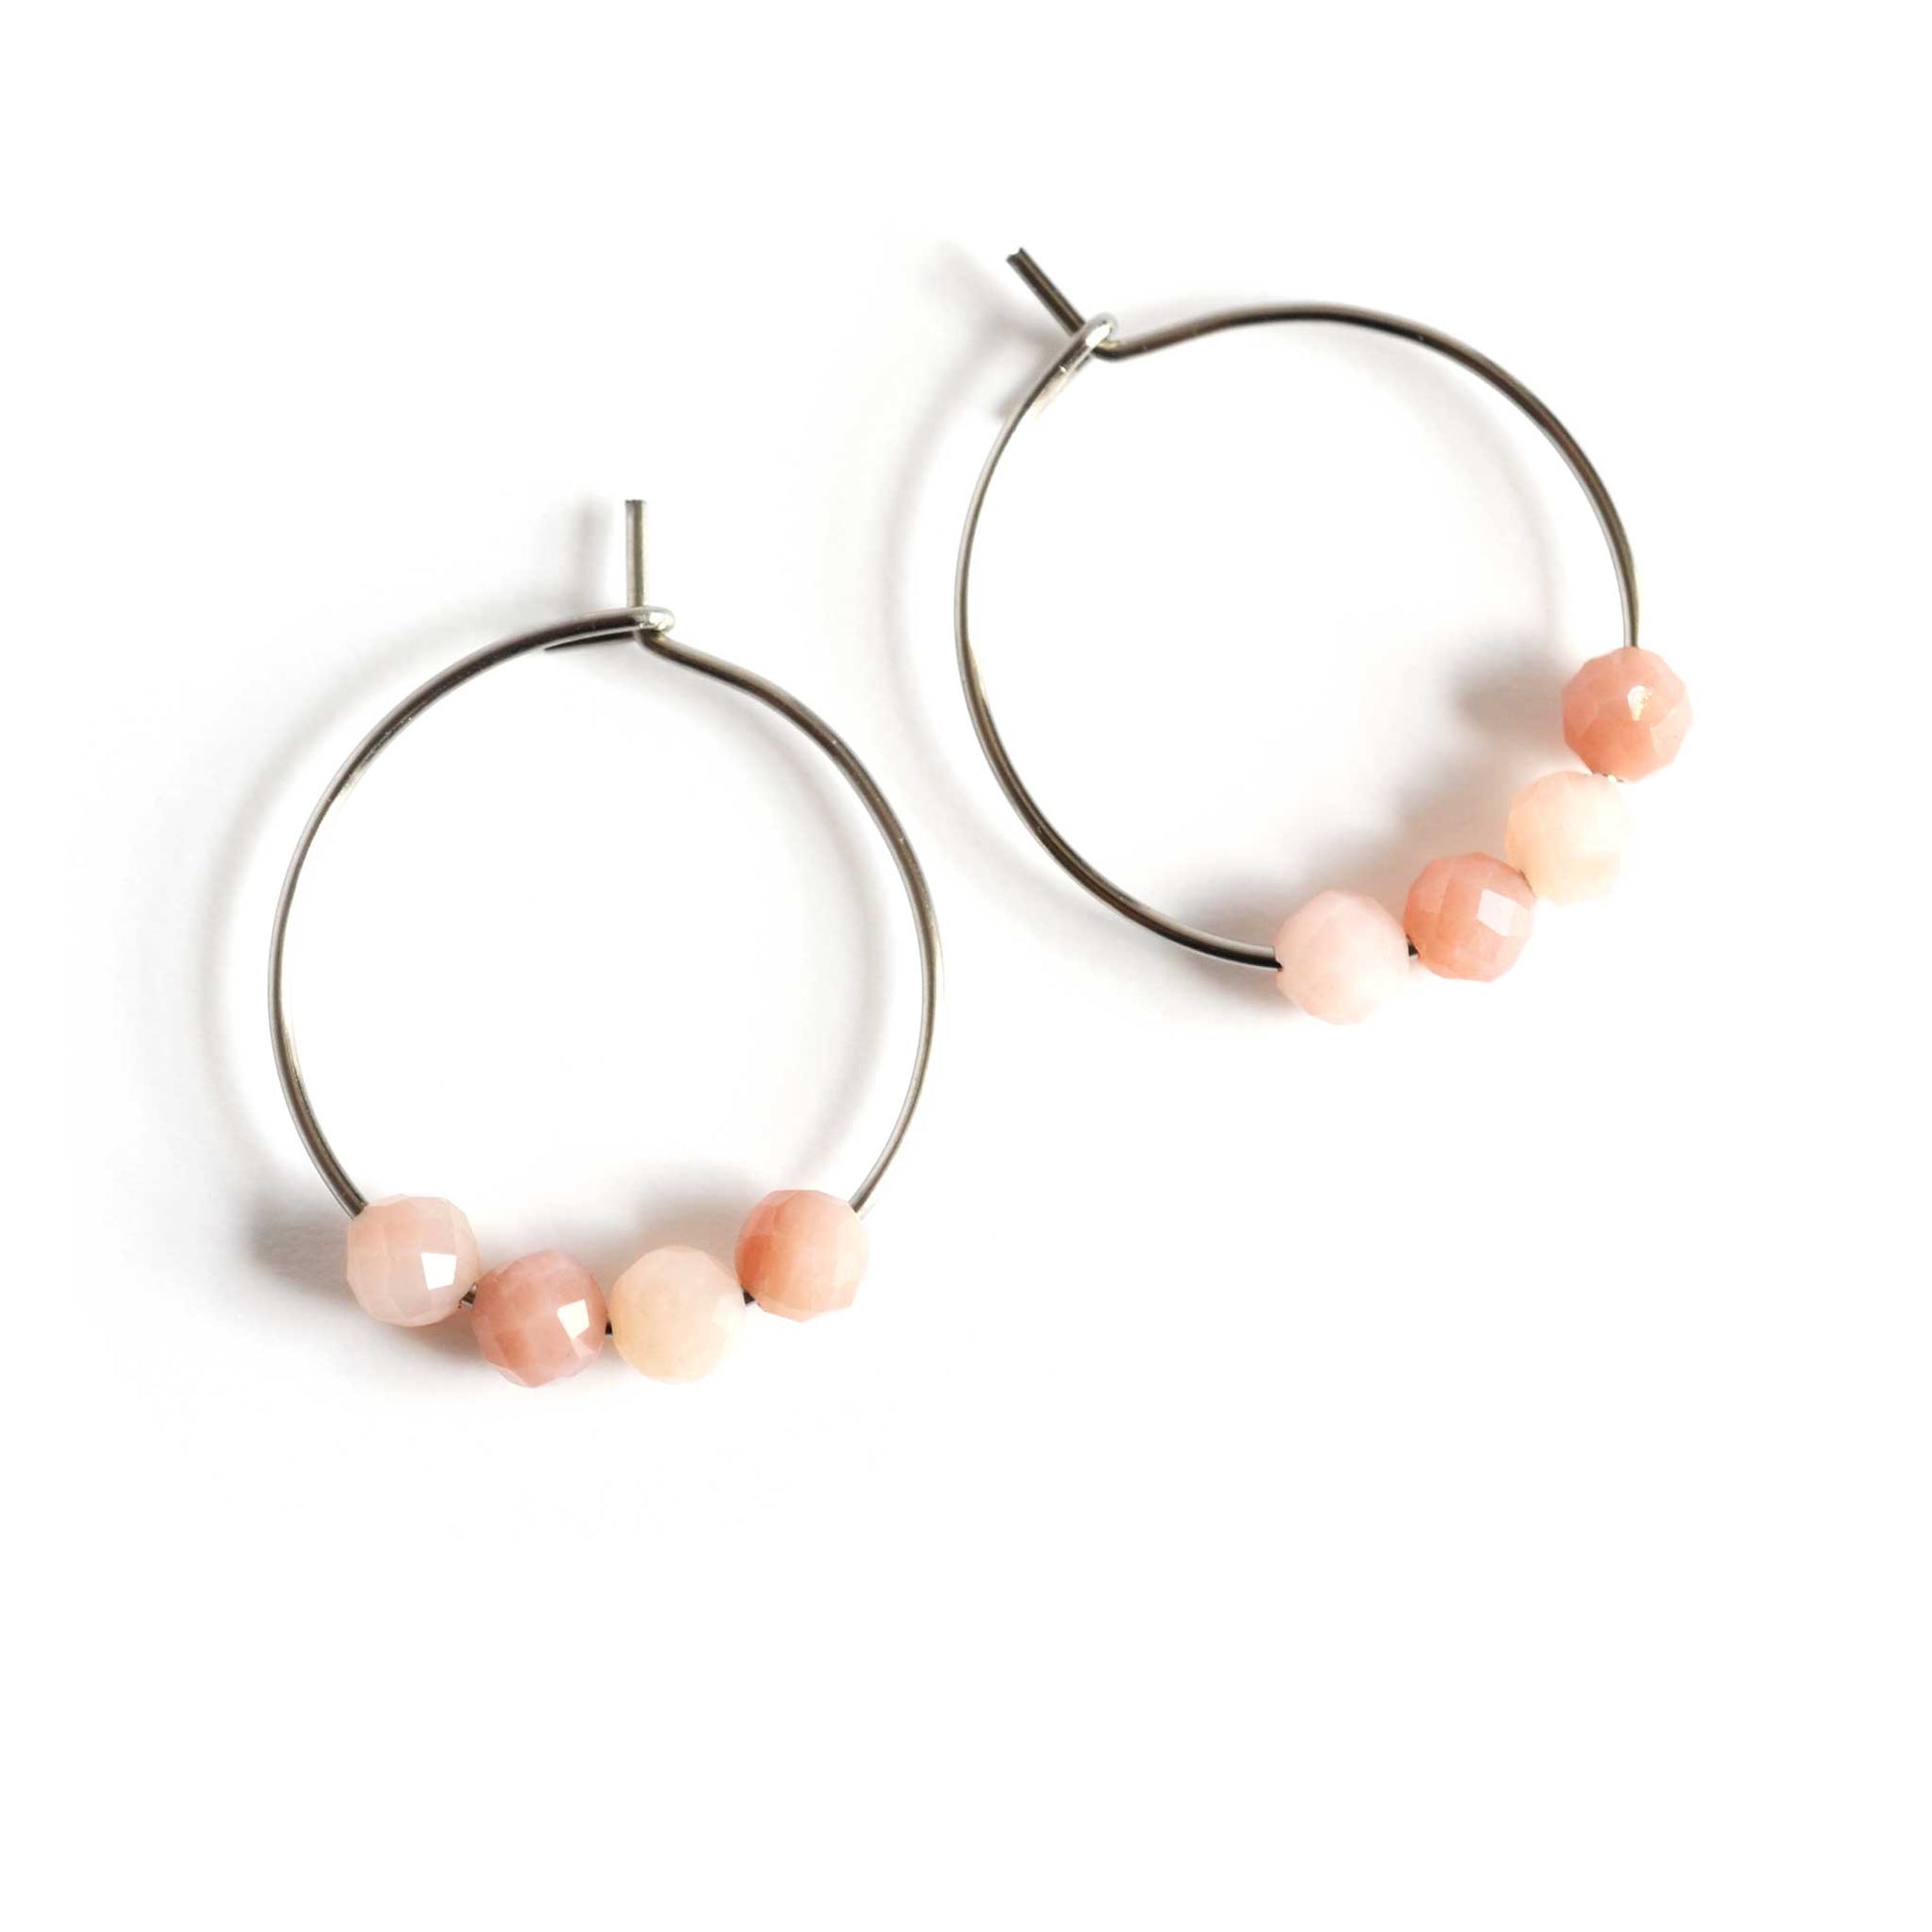 Pair of pink hoop earrings with pale Pink Opal gemstones